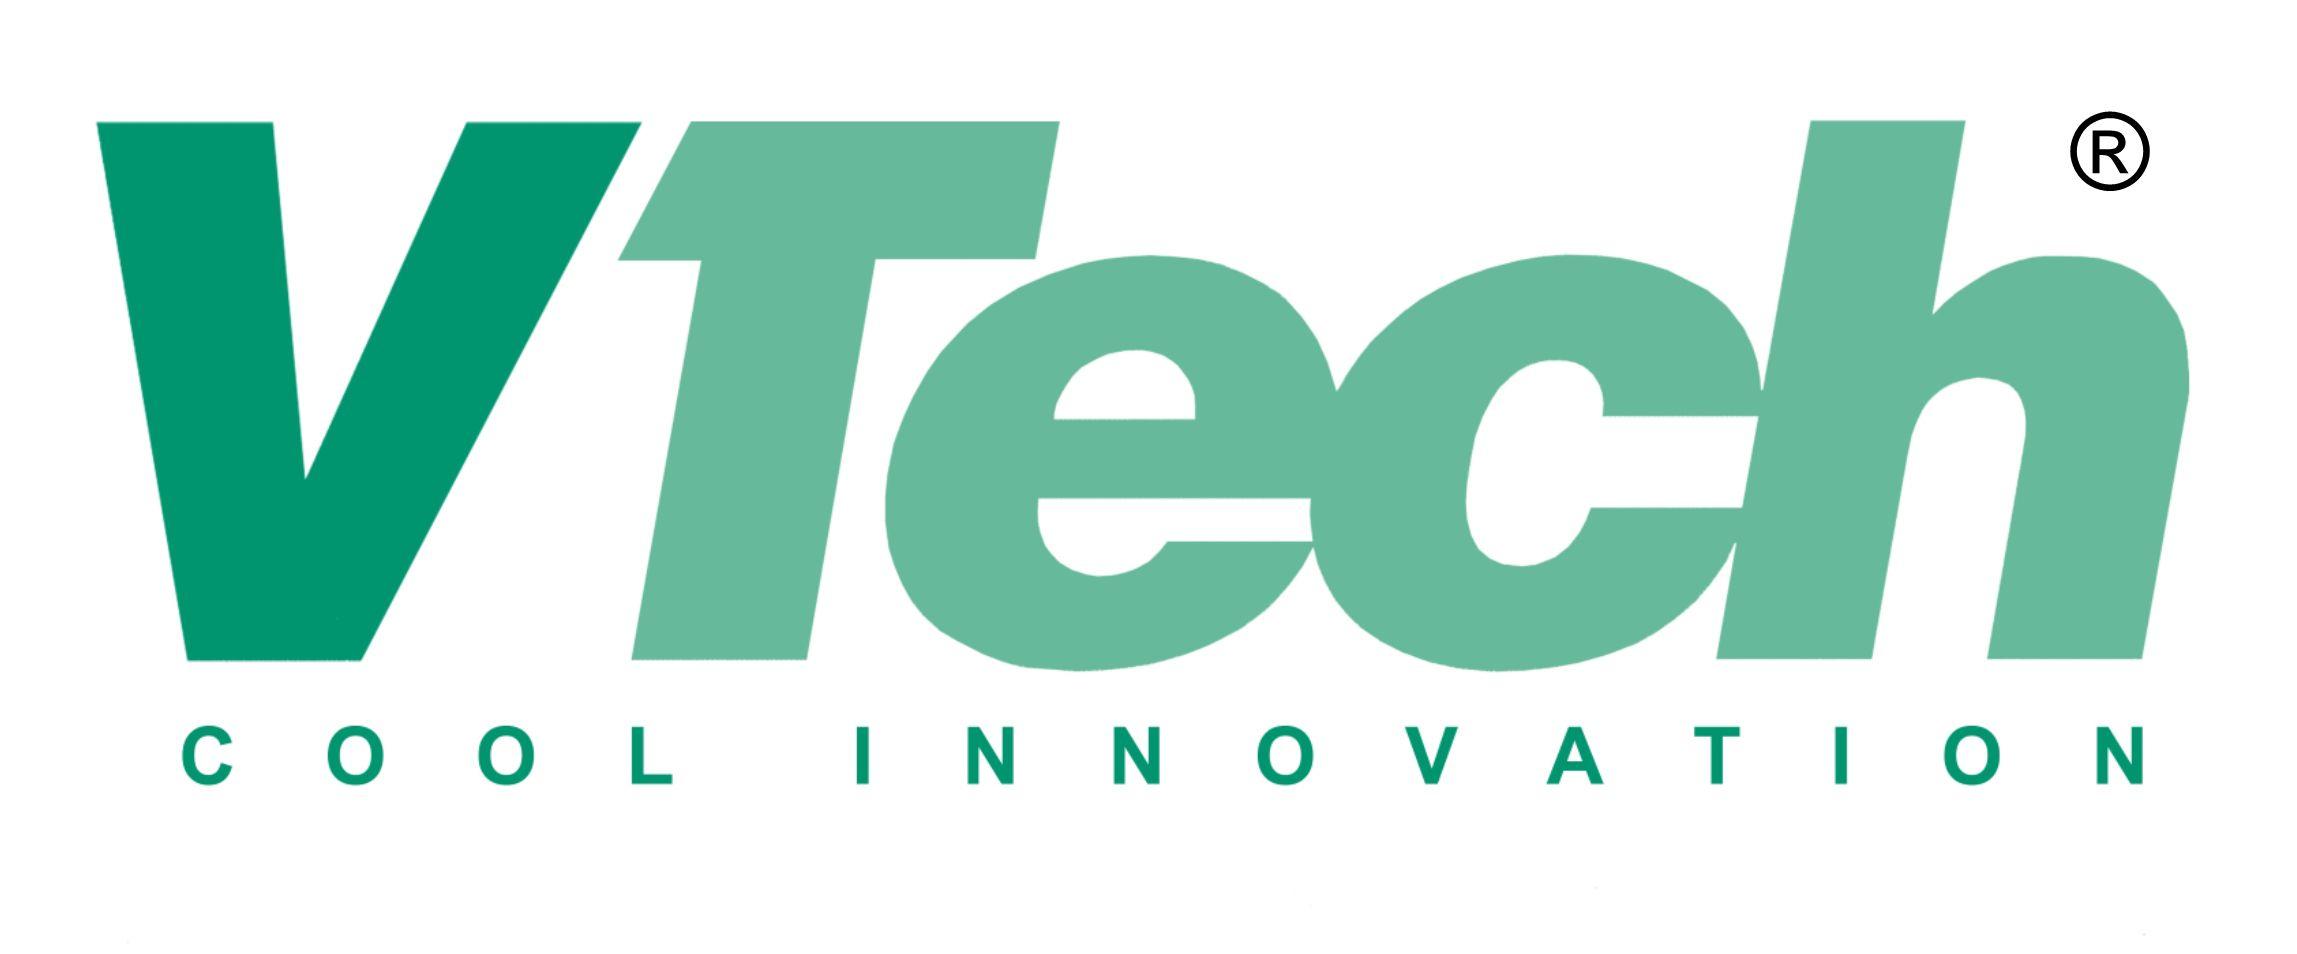 VTech Logo - Careers at VTech